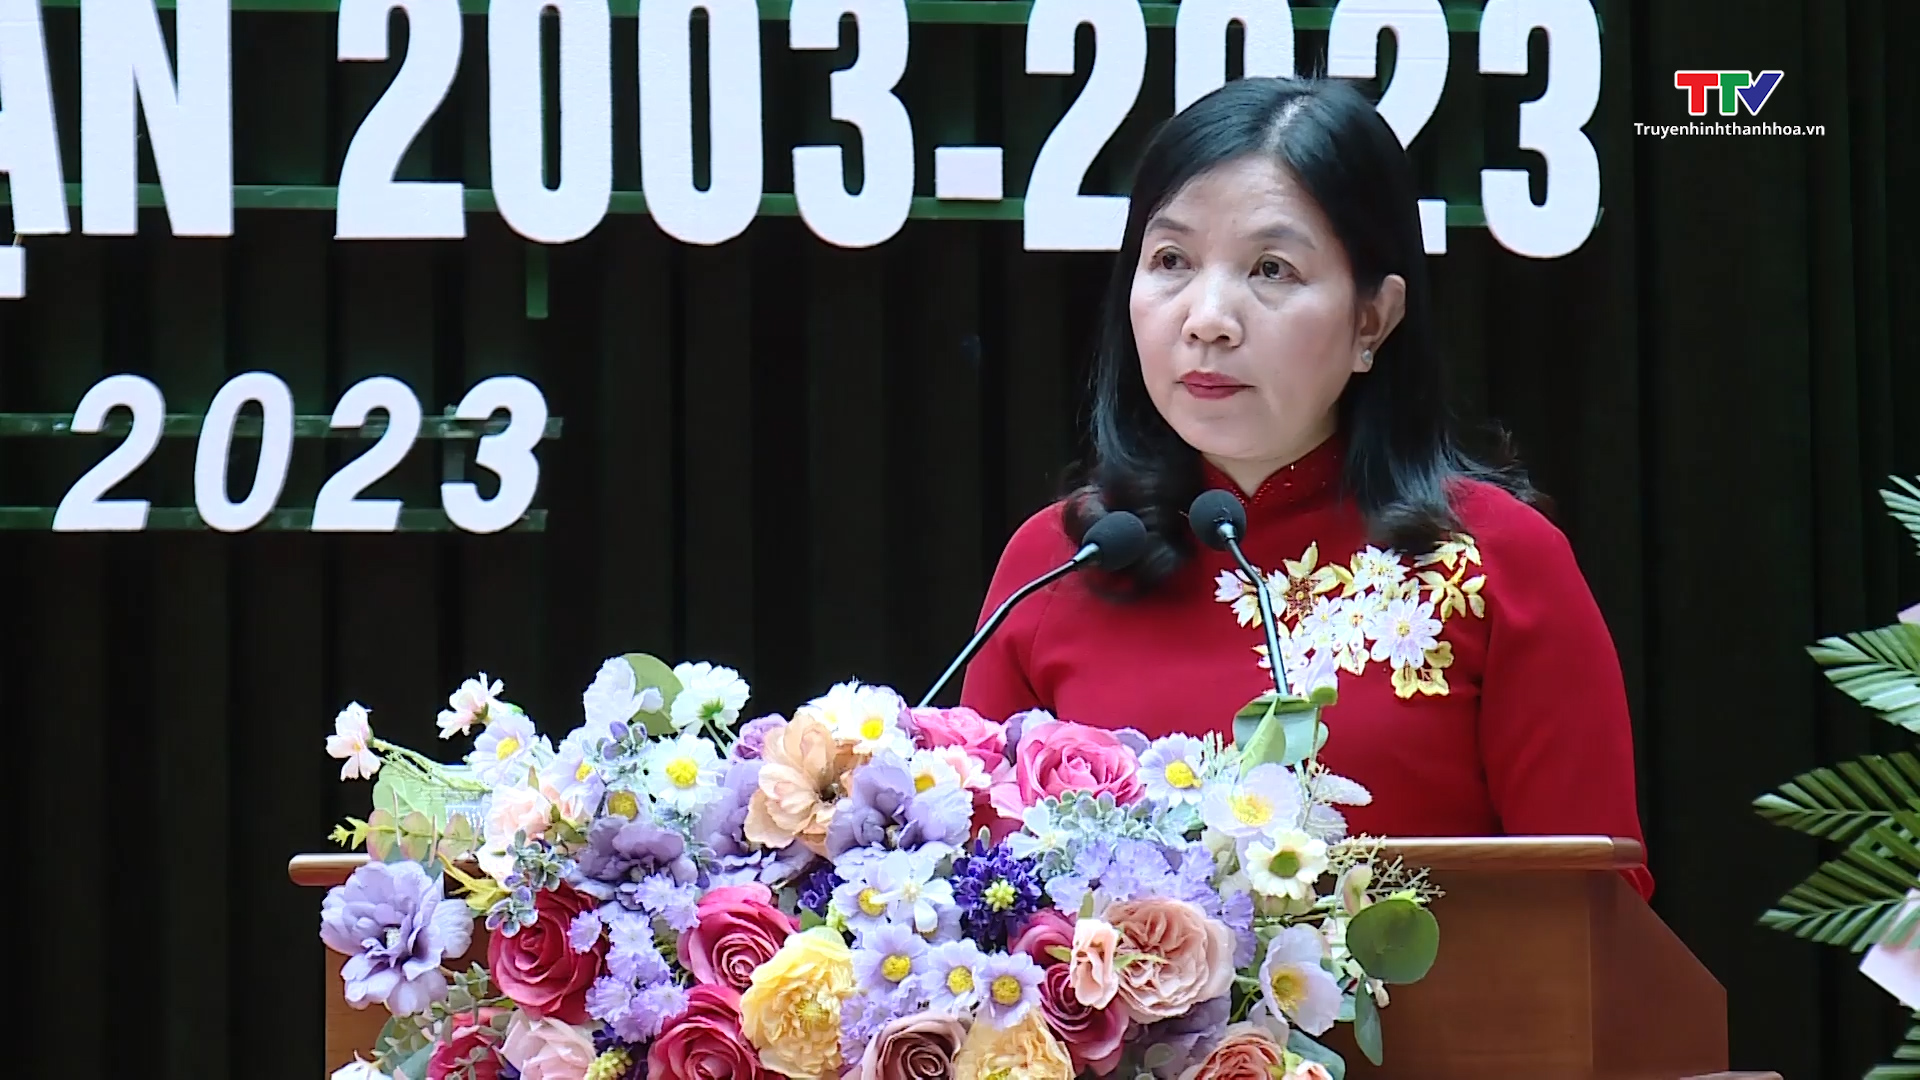 Ủy ban Mặt trận tổ quốc thành phố Thanh Hóa đón nhận Huân chương Lao động hạng Nhì và tổng kết 20 năm tổ chức Ngày hội đại đoàn kết toàn dân tộc - Ảnh 3.